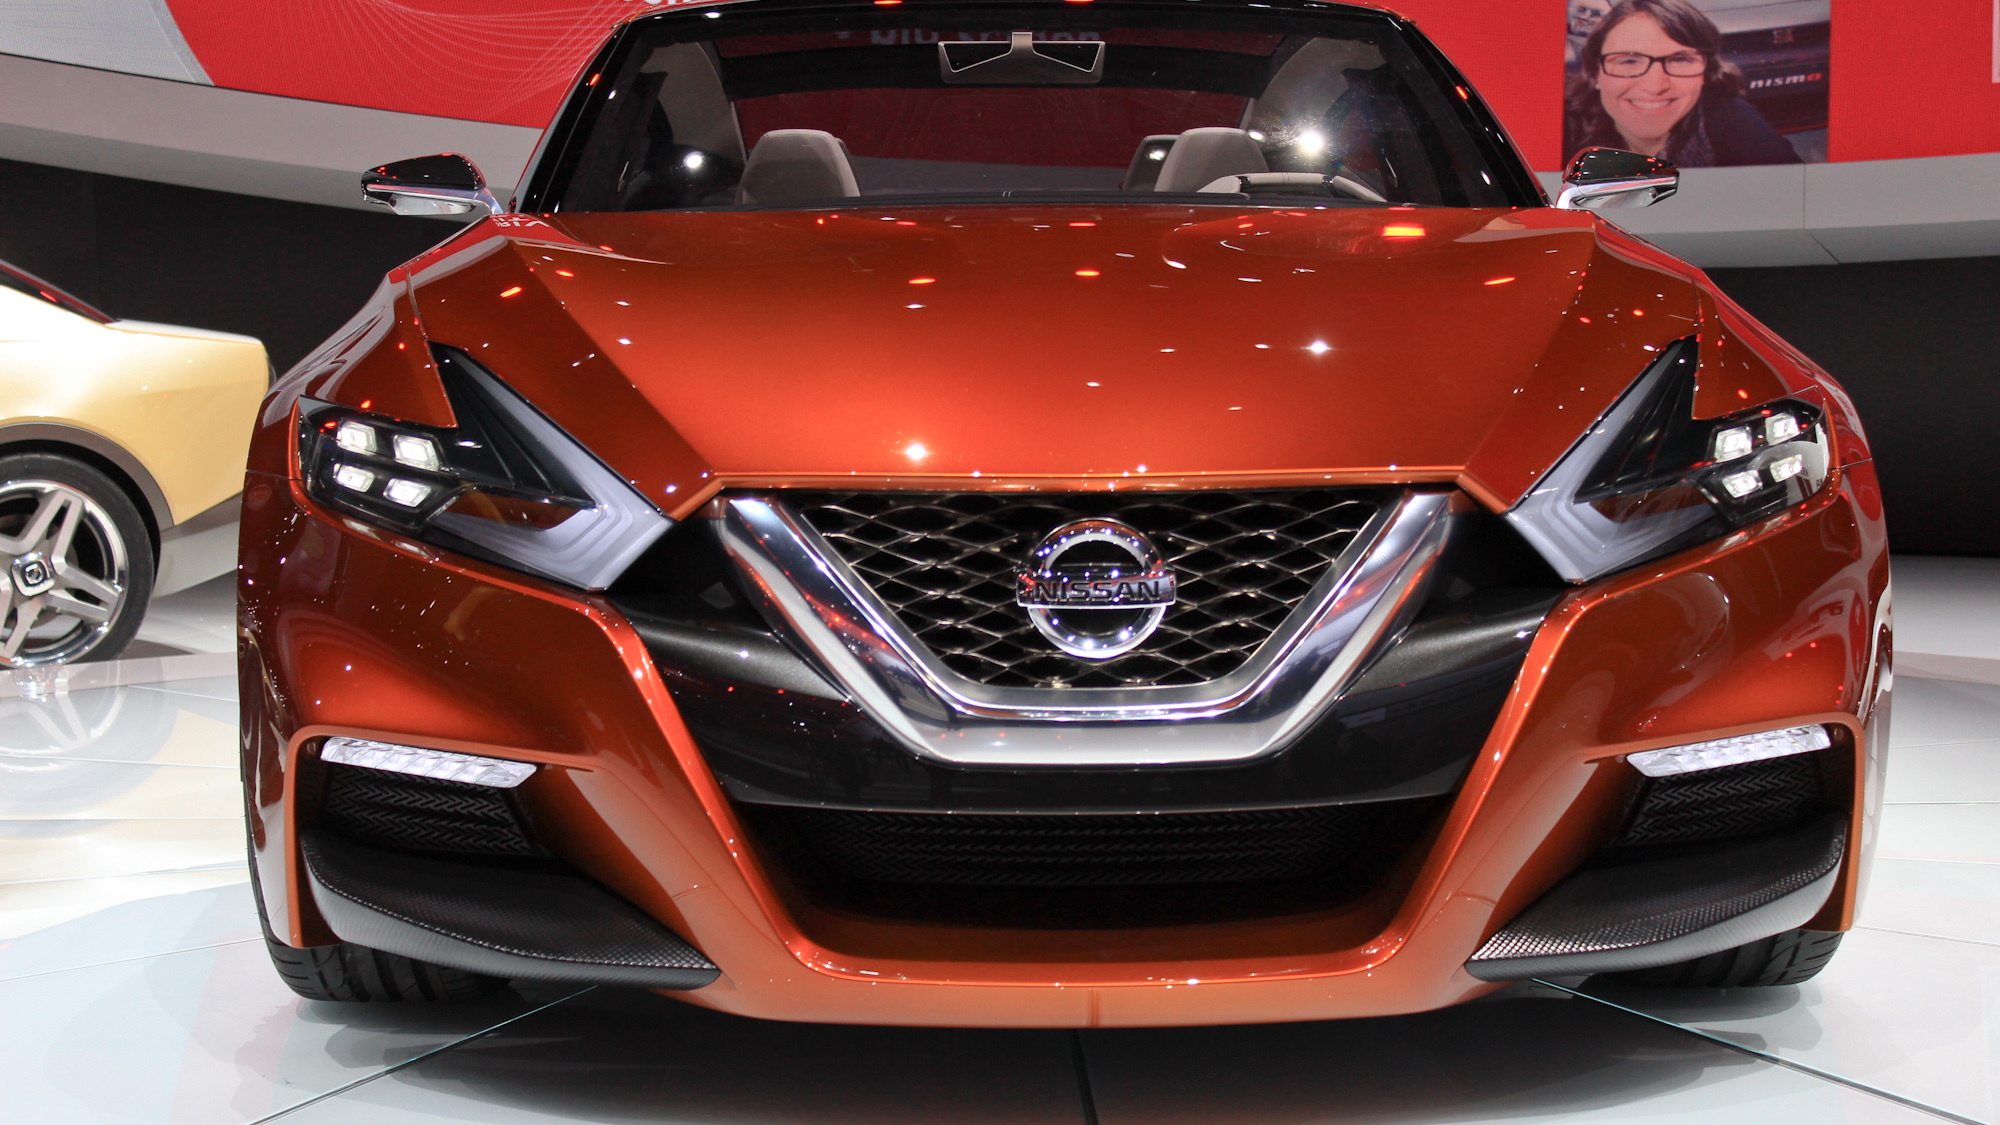 Nissan Sport Sedan Concept live photos, 2014 Detroit Auto Show